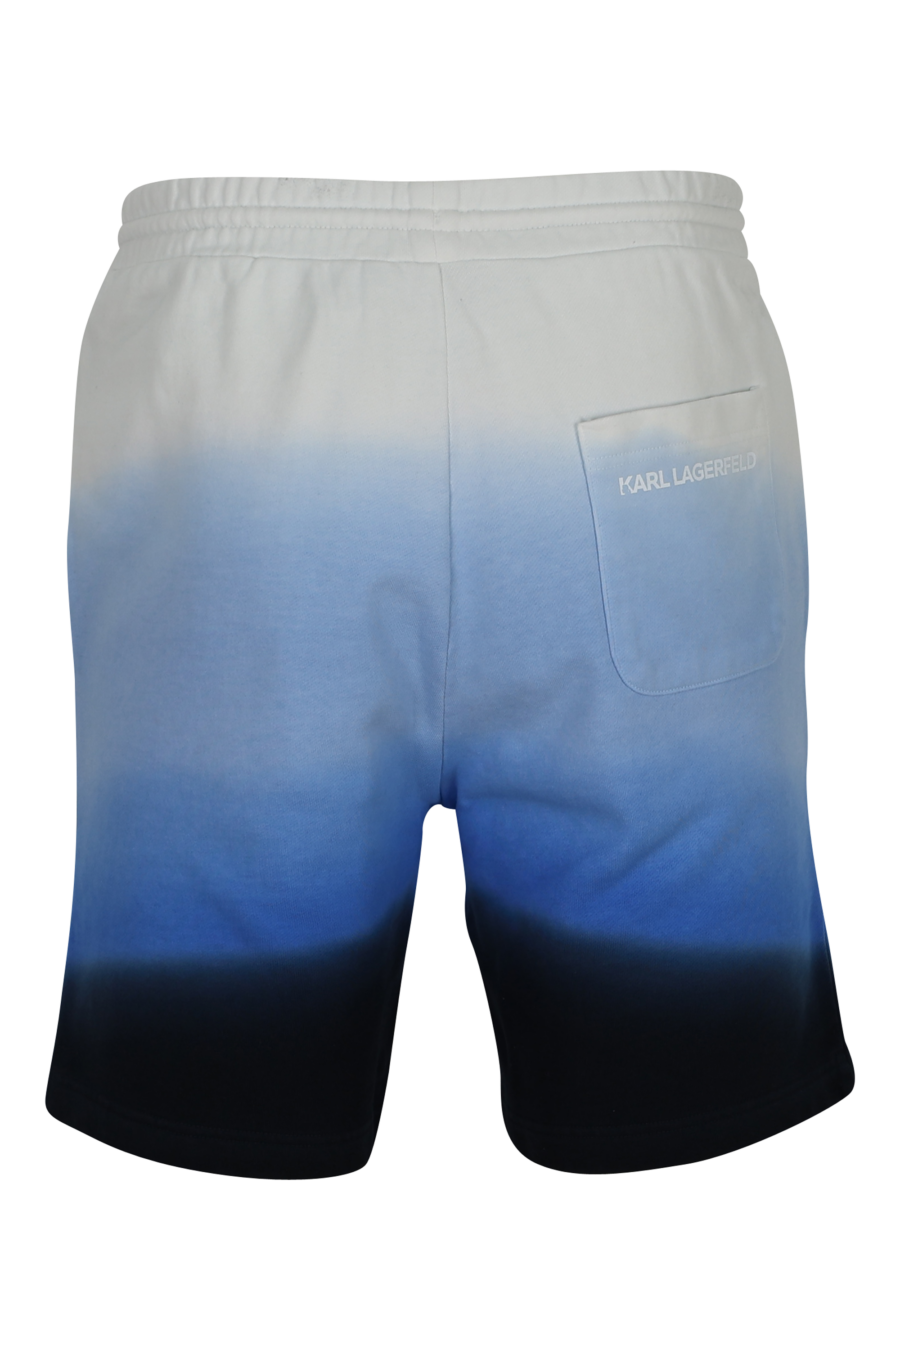 Pantalón de chándal corto en degradé azul - 4062226784405 1